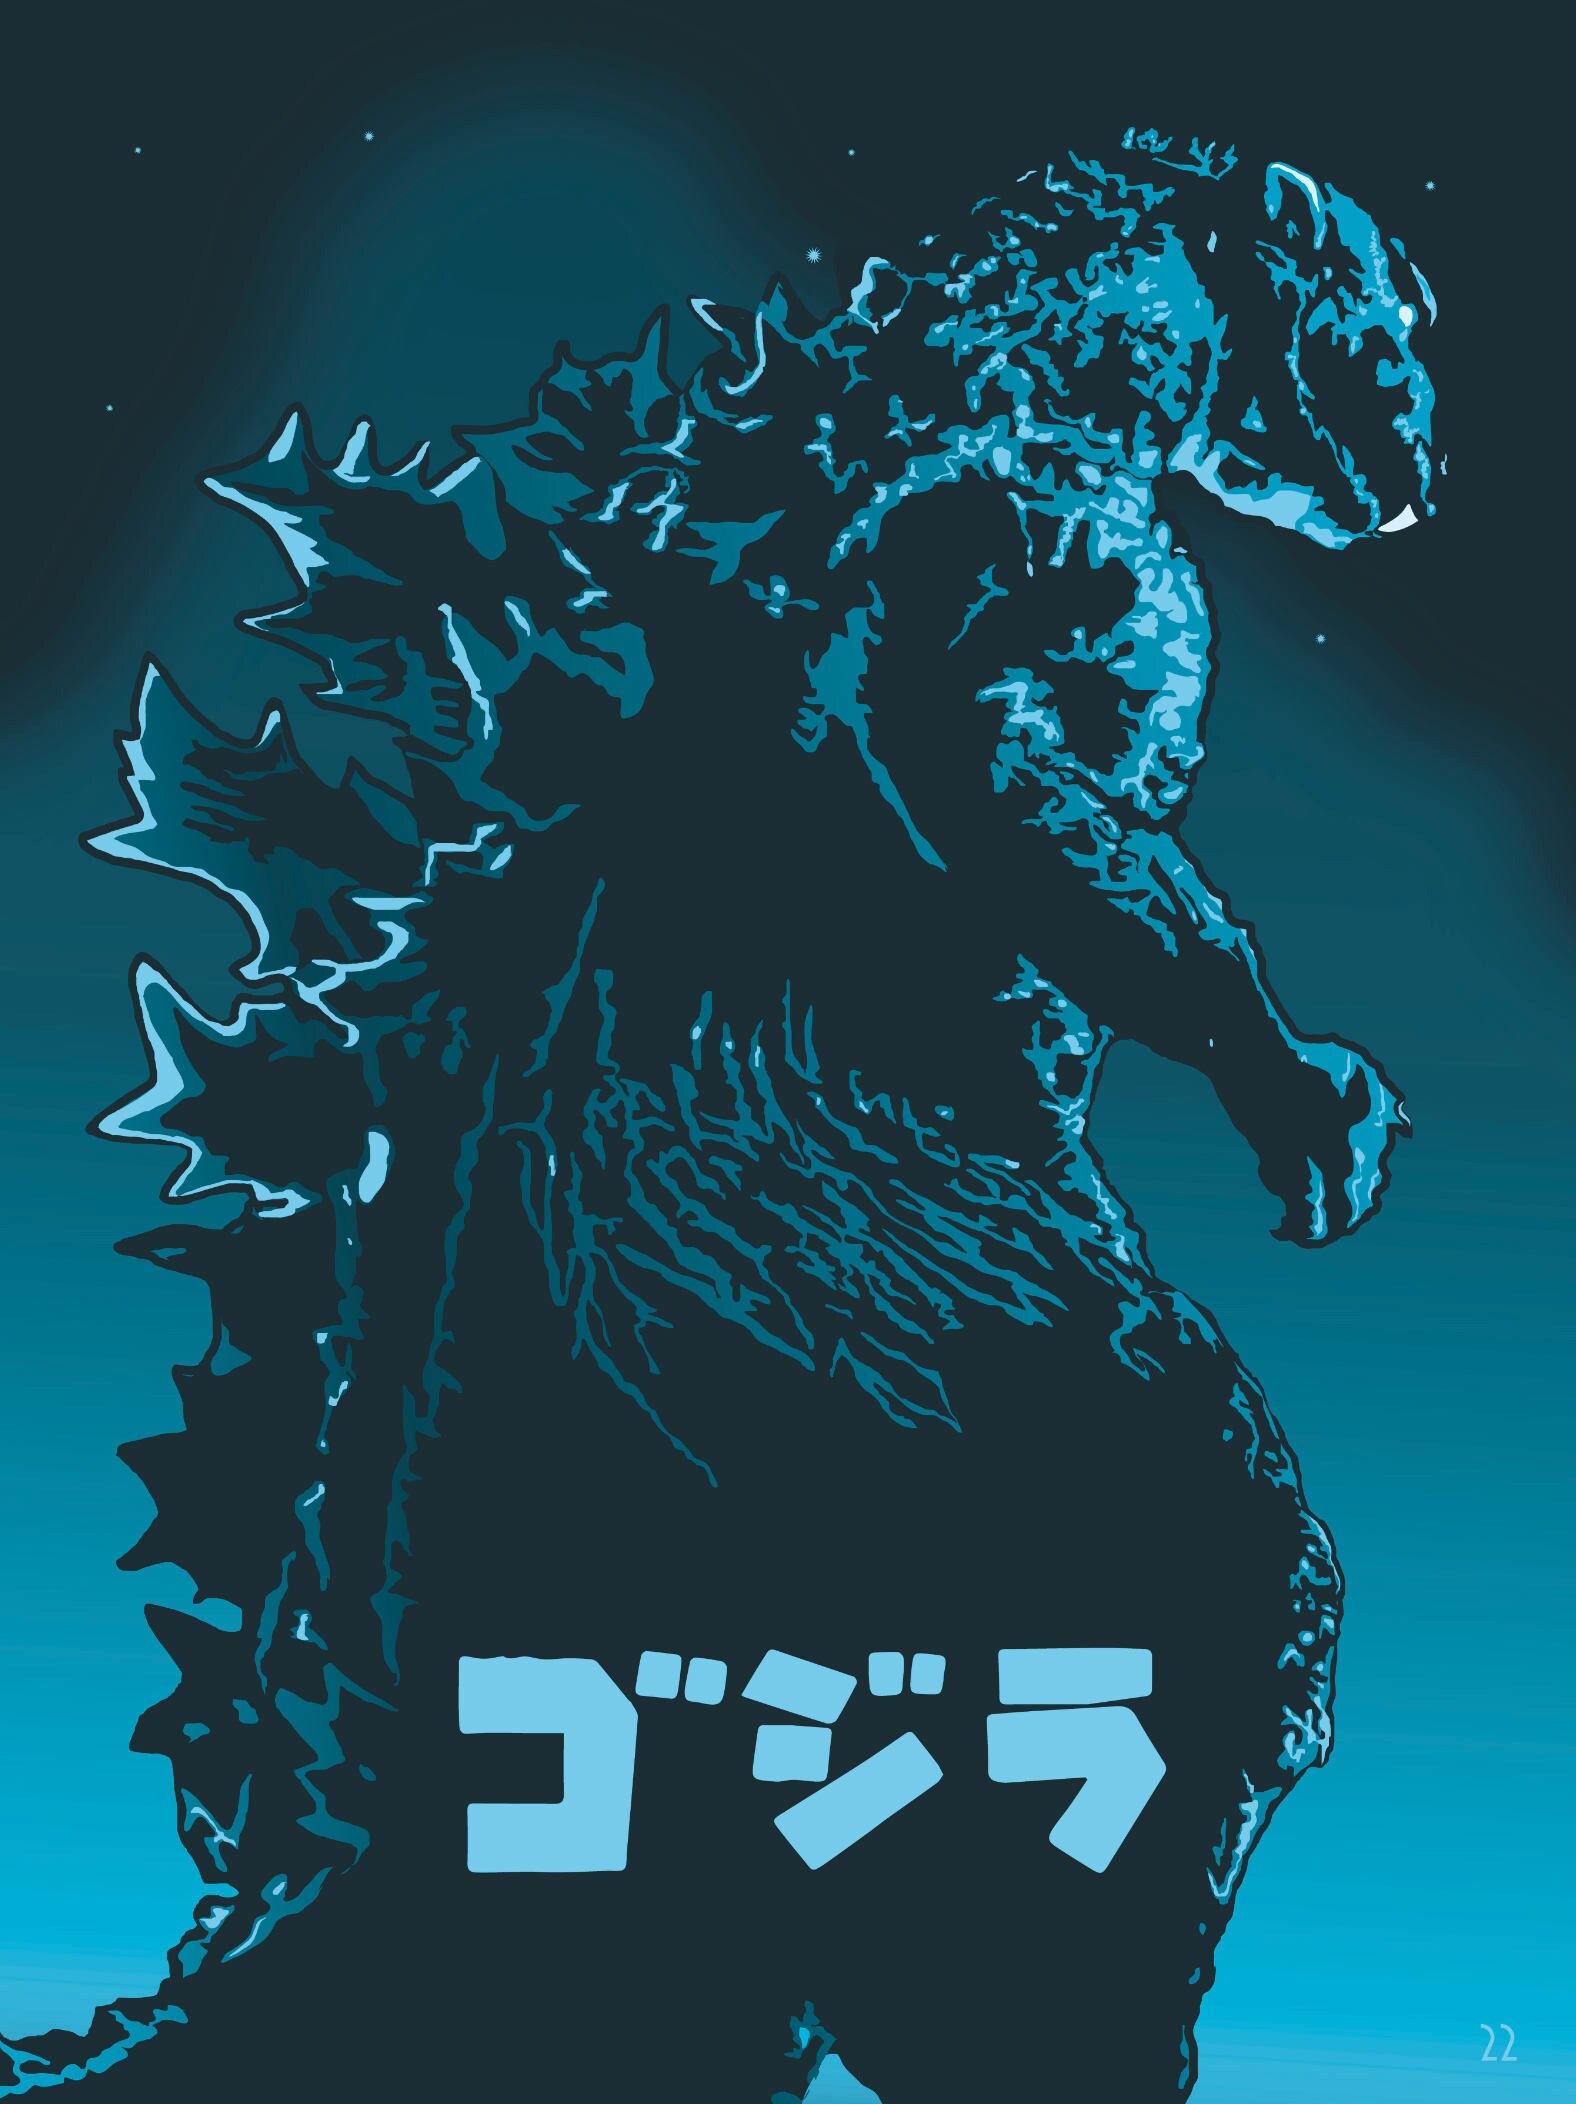 Godzilla 1954 - Etsy Canada